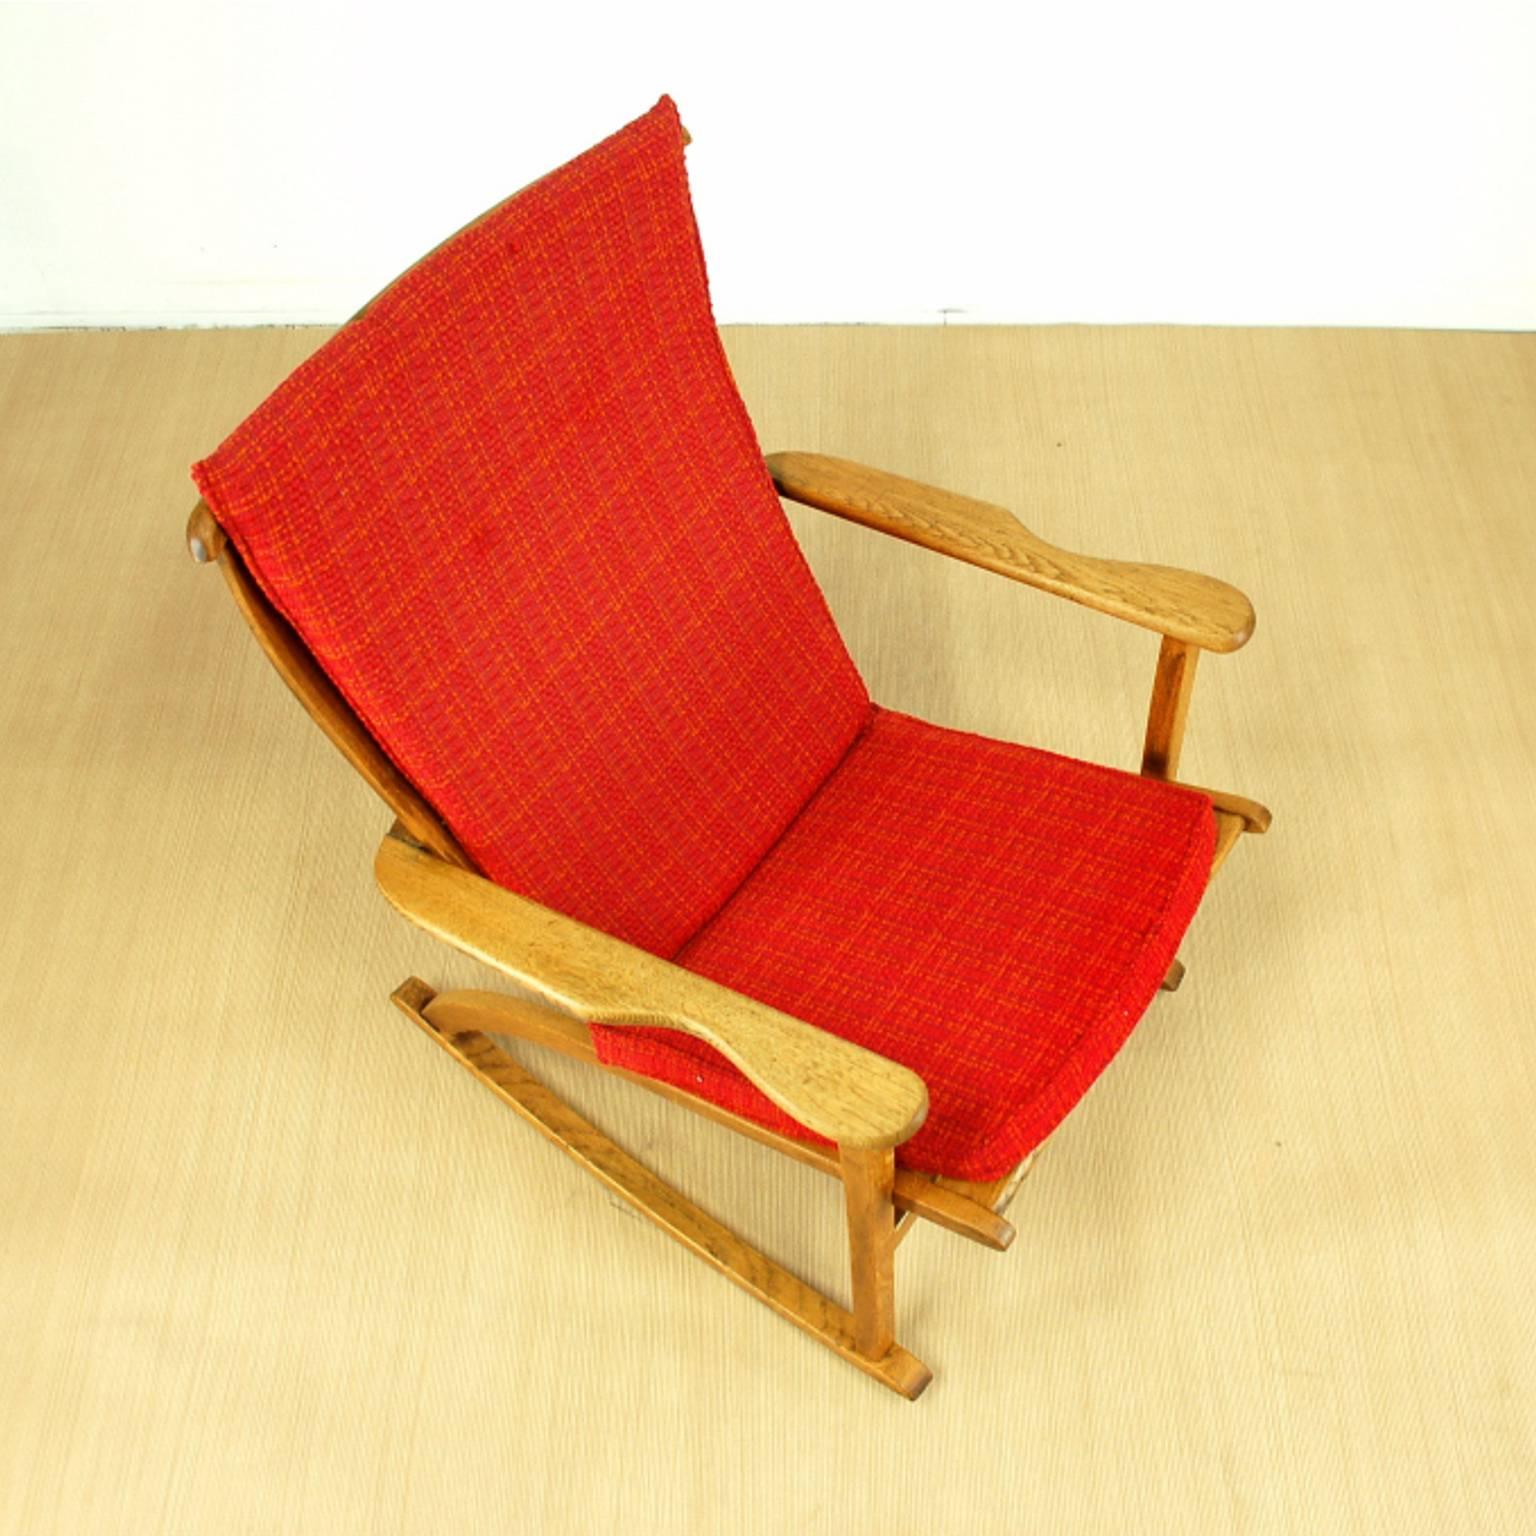 Scandinavian Modern Sculptural Danish Modern Rocking Chair For Sale